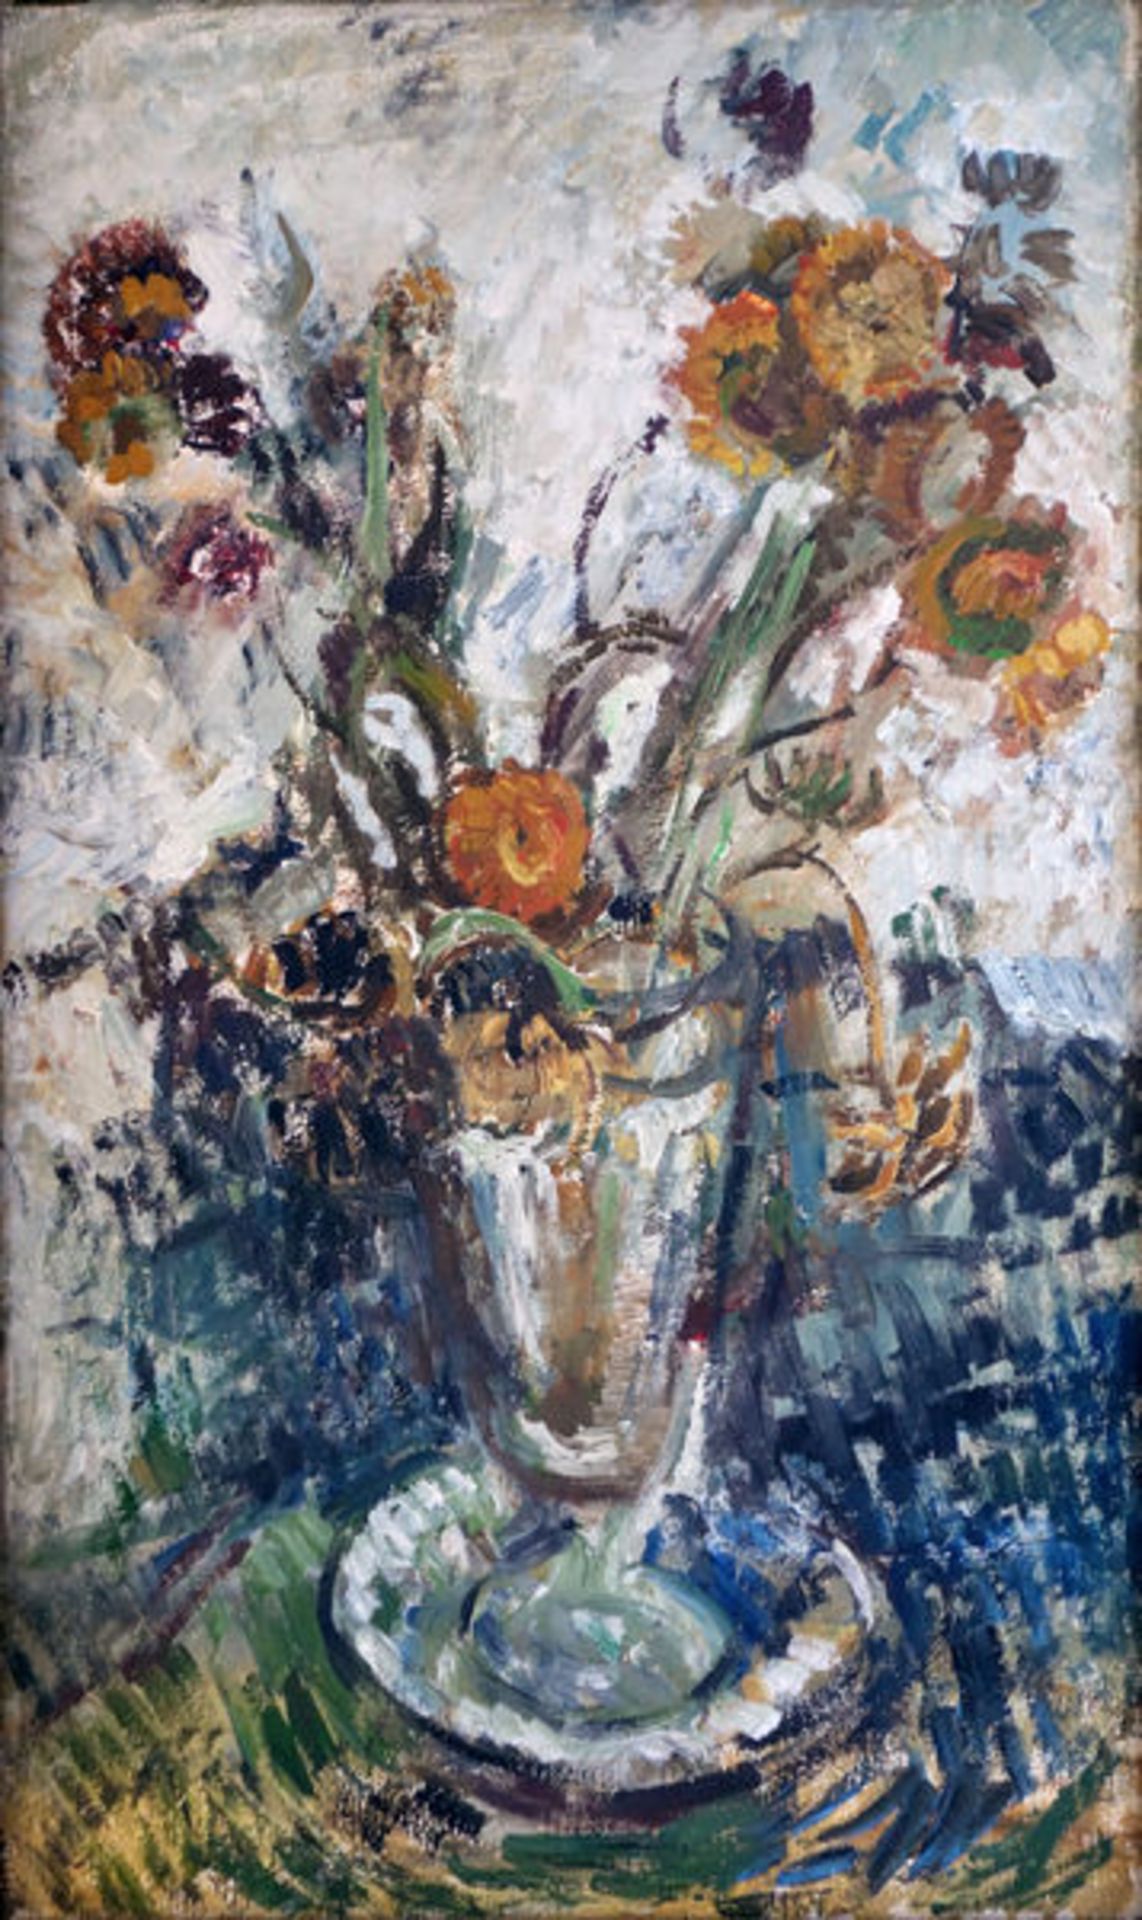 Böttcher, ManfredÖl auf Leinwand, 50 x 30 cmBlumen in Vase (1971)Auf der Rückseite der Leinwand